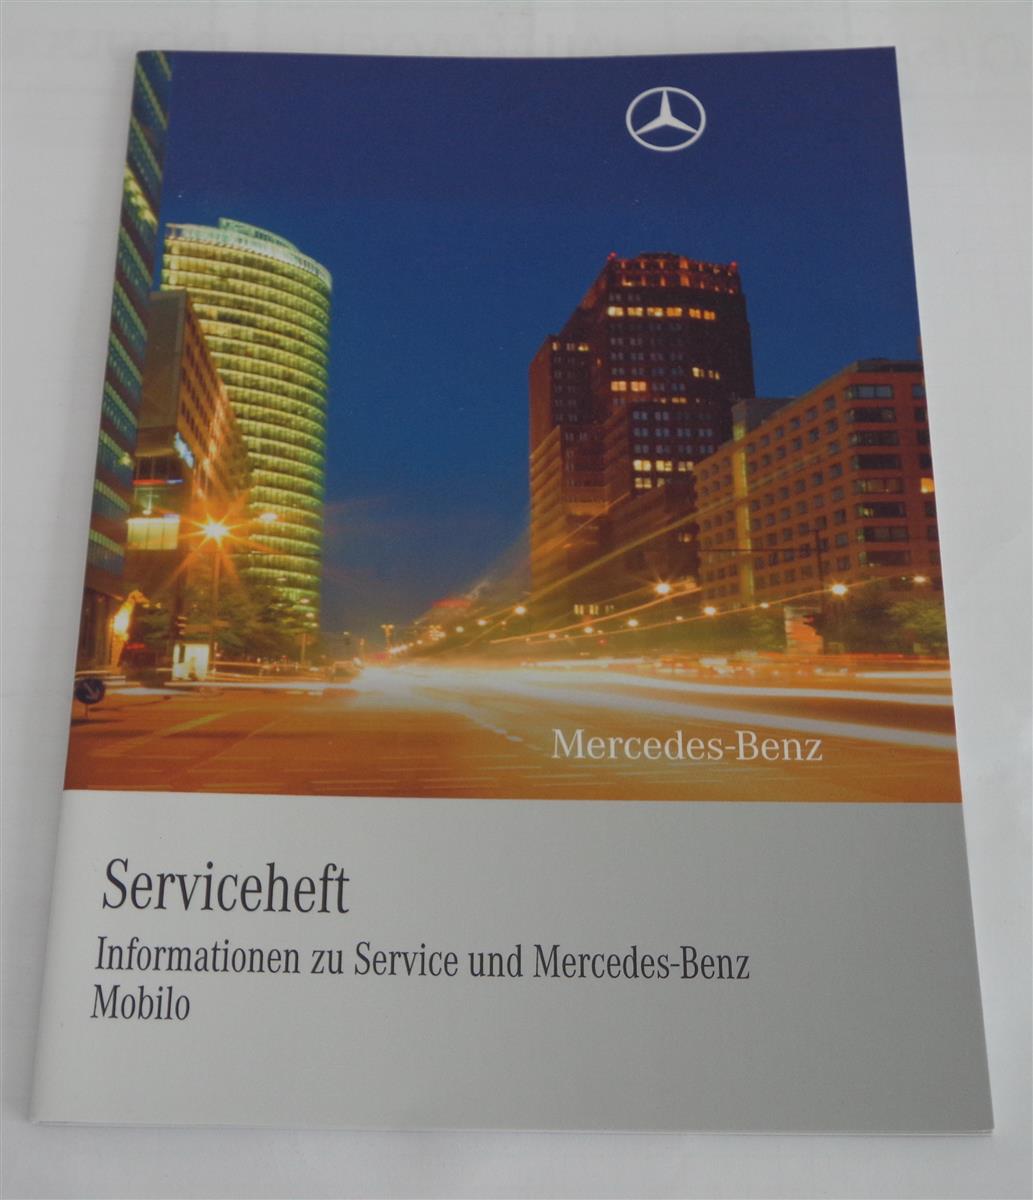 Info zum Serviceheft Mercedes Benz CLS Typ 218 + Mobilo von 04